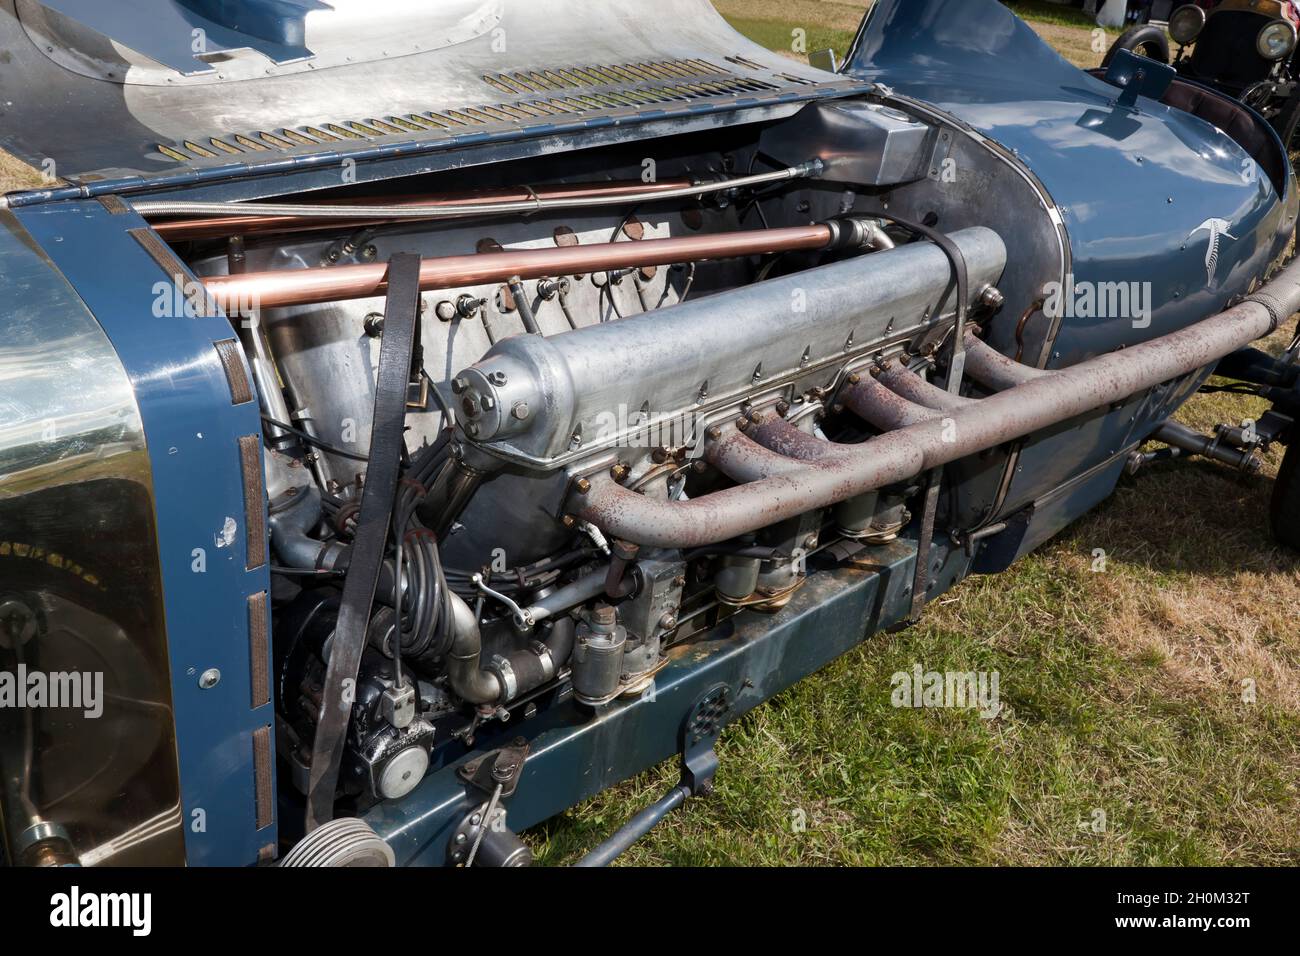 Primo piano del motore aerodinamico Mb12 da 27 litri in un SID Delage Hispano Suiza del 1926/30, esposto al London Classic Car Show del 2021 Foto Stock